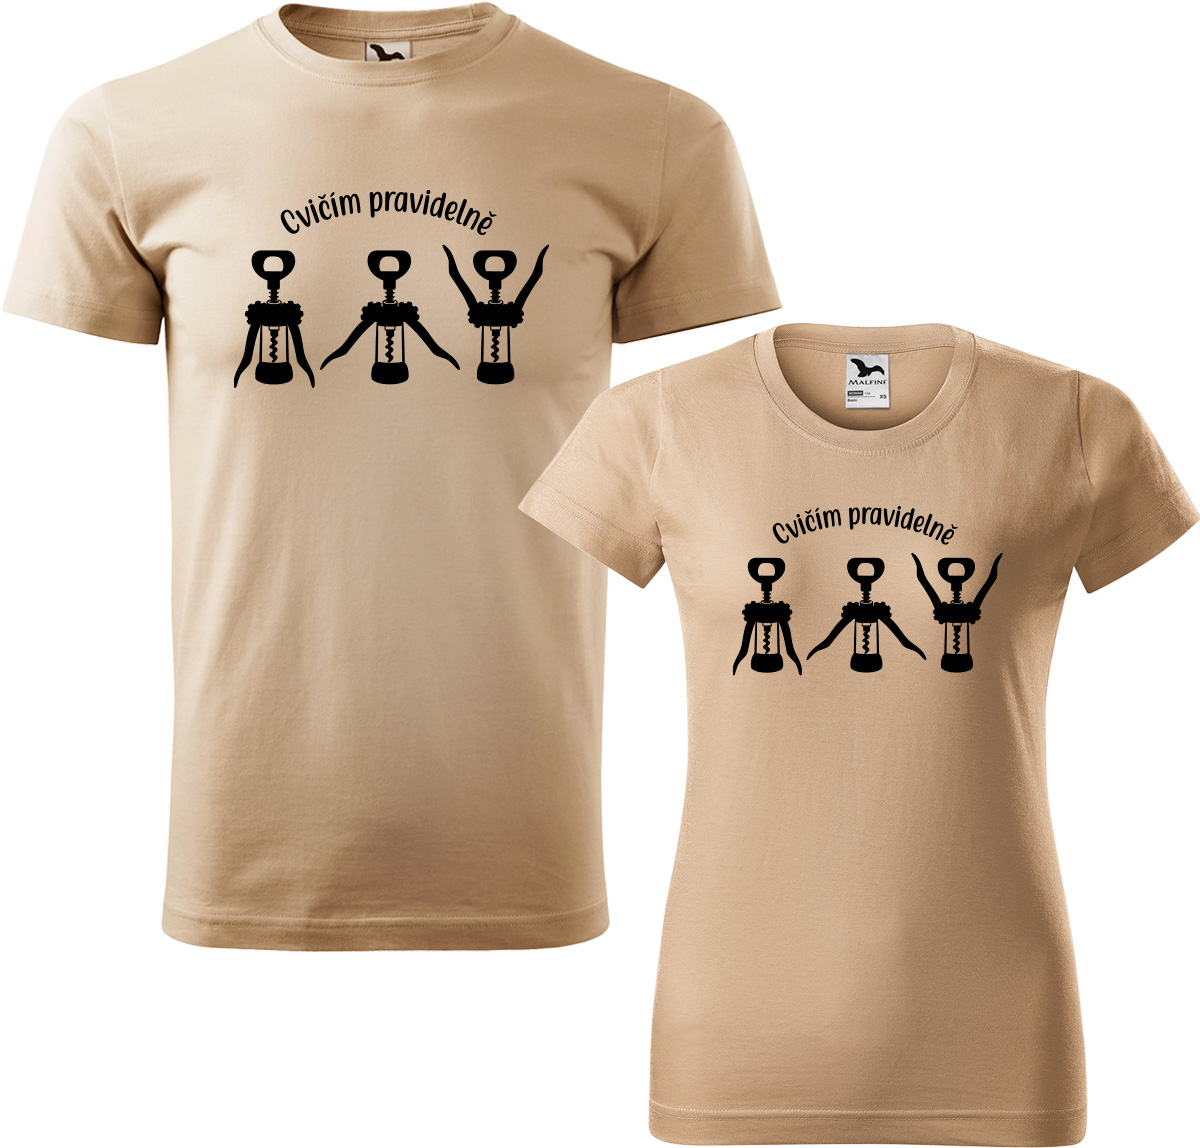 Trička pro páry - Cvičím pravidelně Barva: Písková (08), Velikost dámské tričko: M, Velikost pánské tričko: M